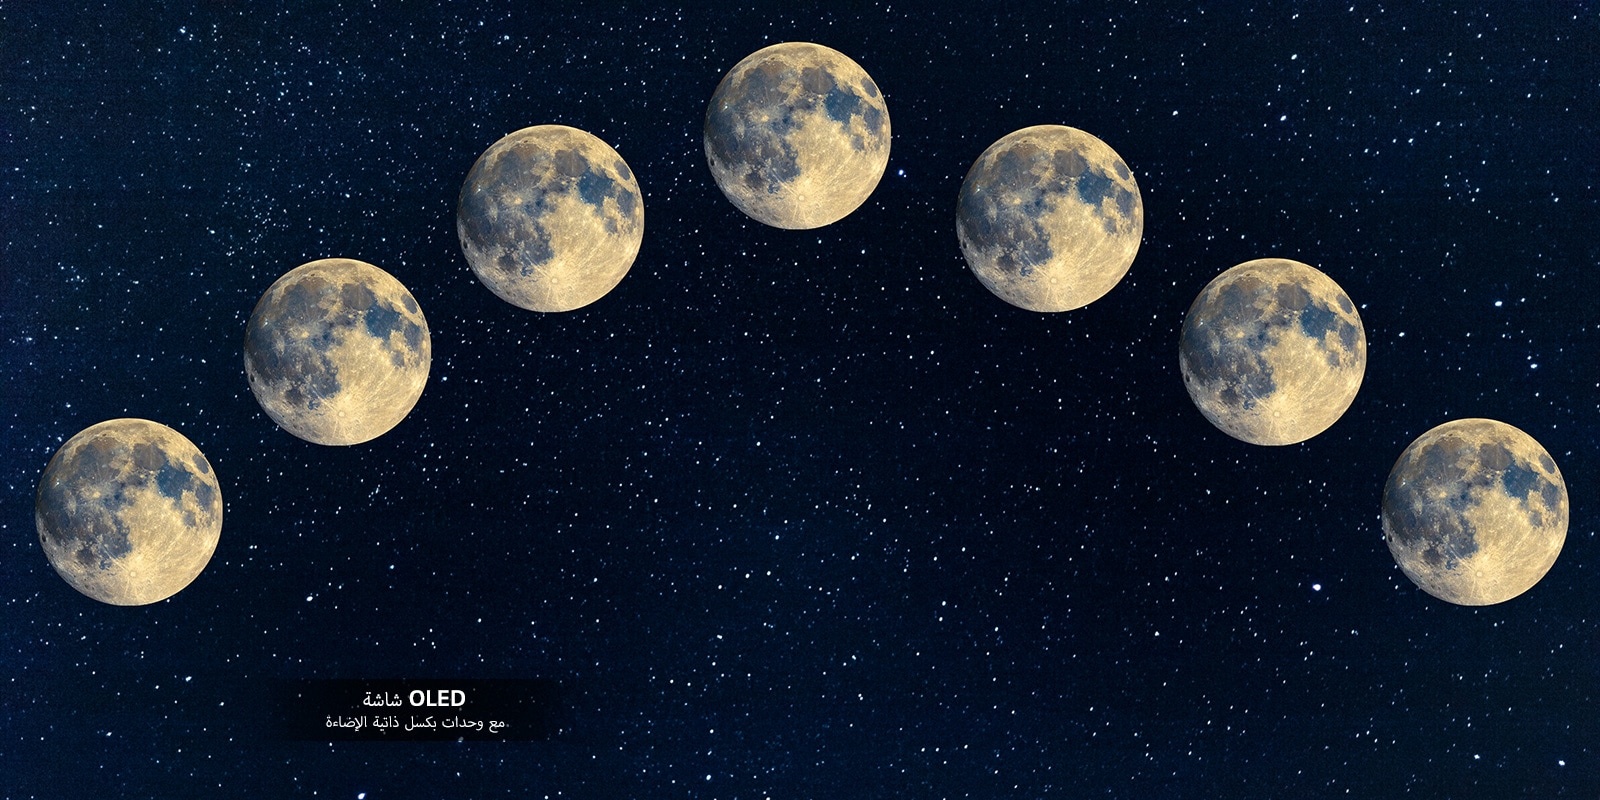 صورة لسبعة قمر مكتمل محاذاة عبر سماء الليل.